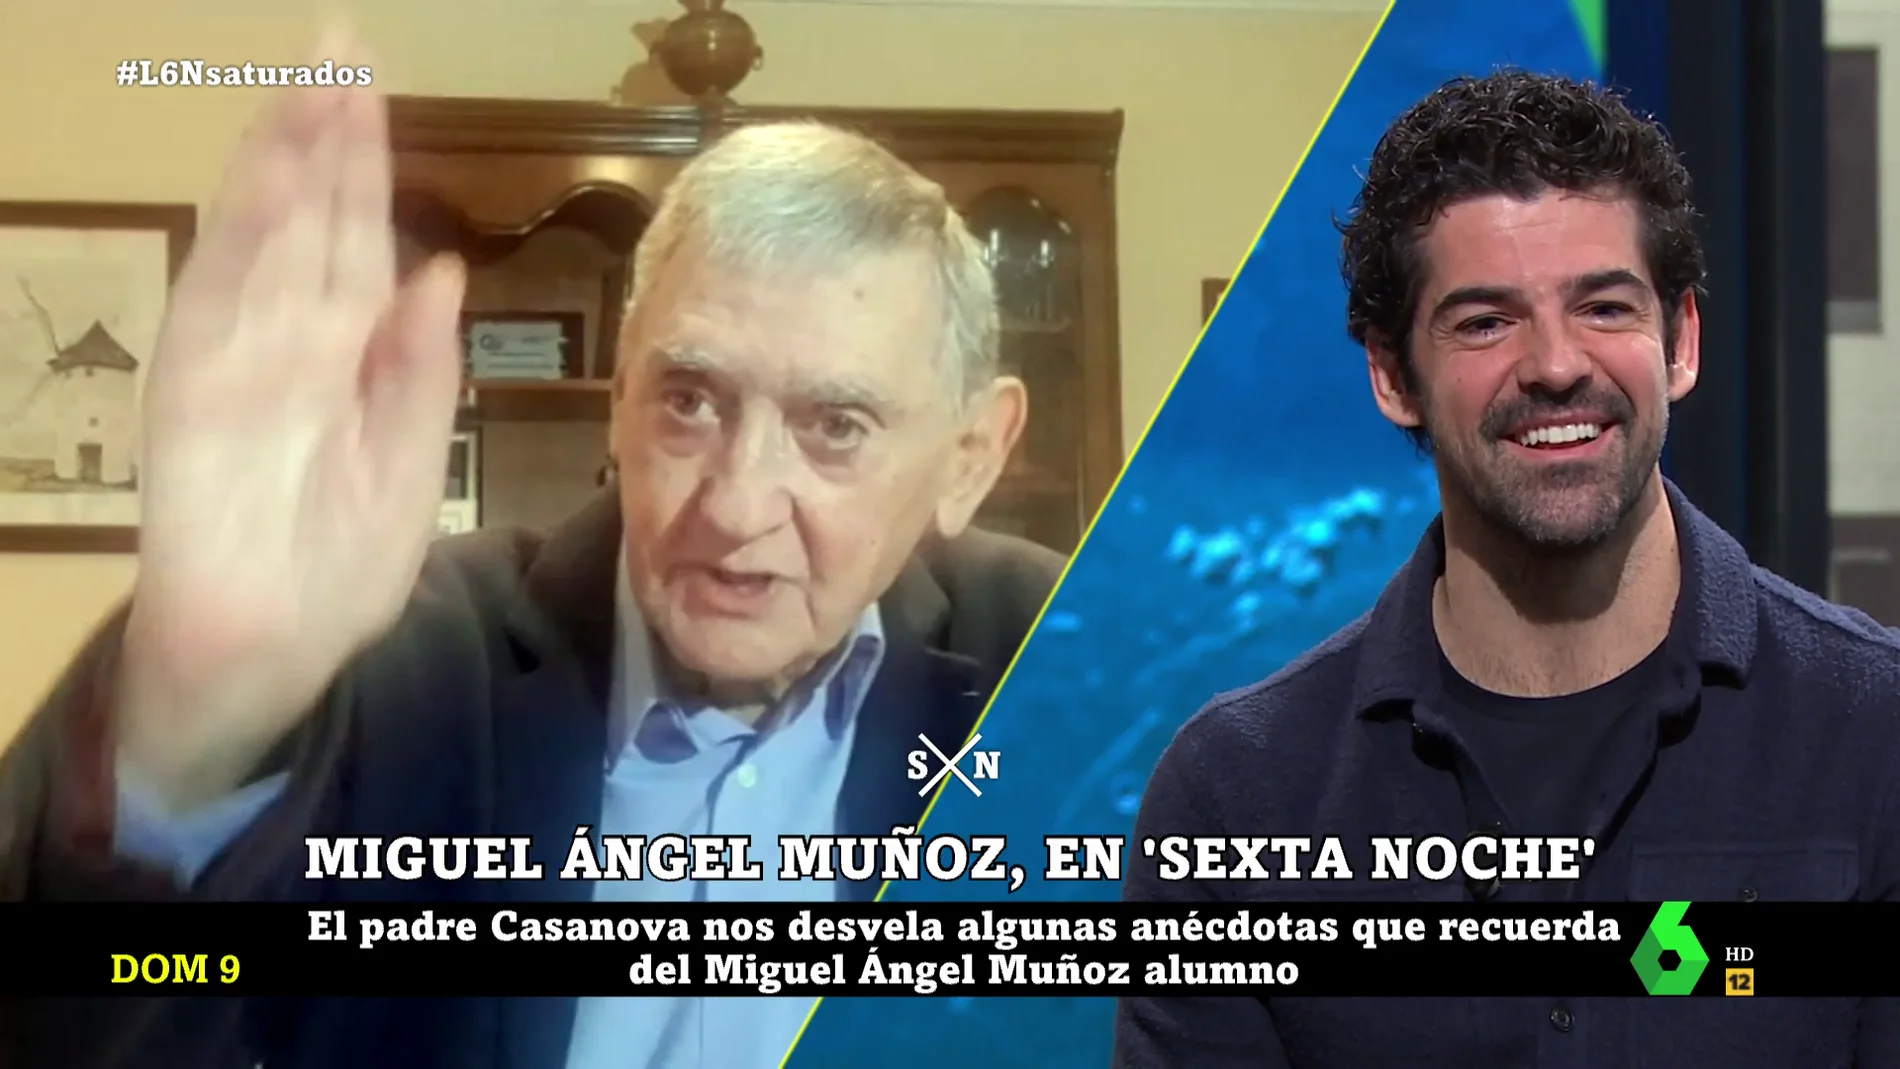 La sorpresa en directo del mentor de Miguel Ángel Muñoz: "Ligaba más de lo debido, pero lo llevaba en secreto"